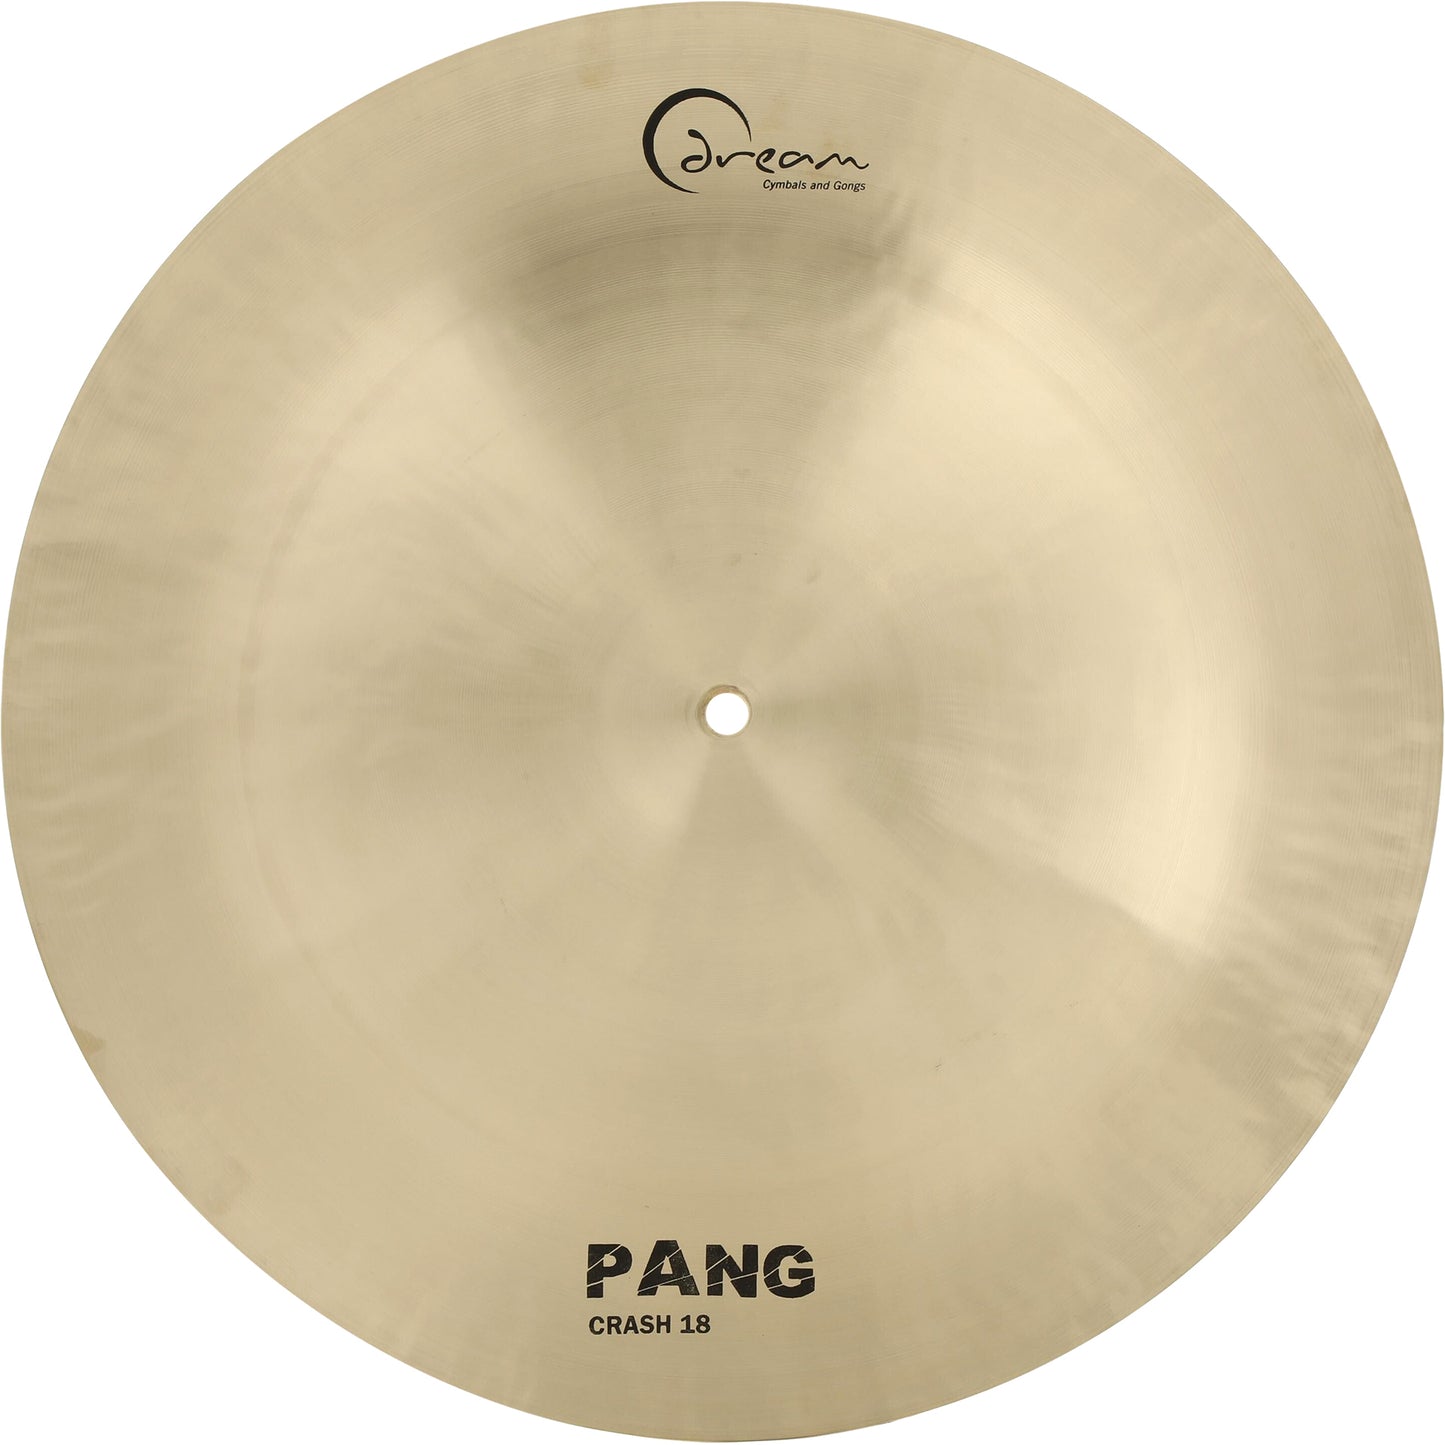 Dream 18” Pang China Crash Cymbal